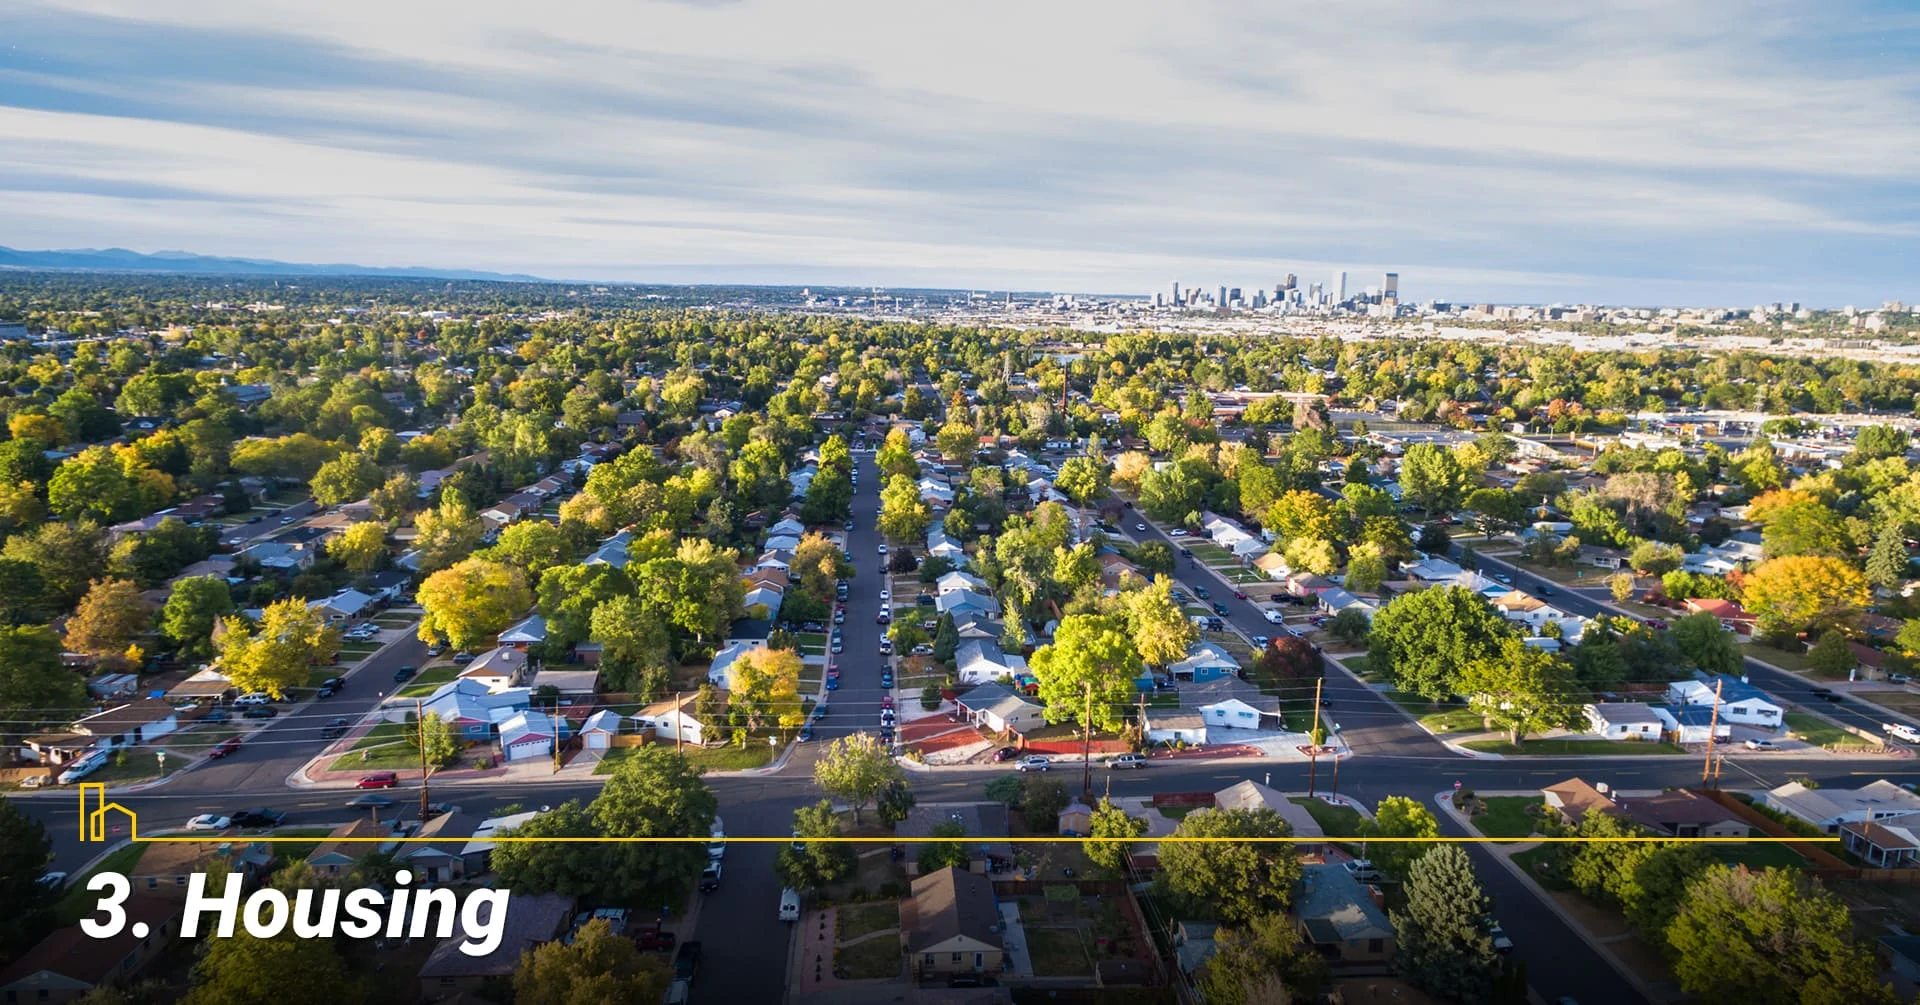 Housing in Denver, Colorado